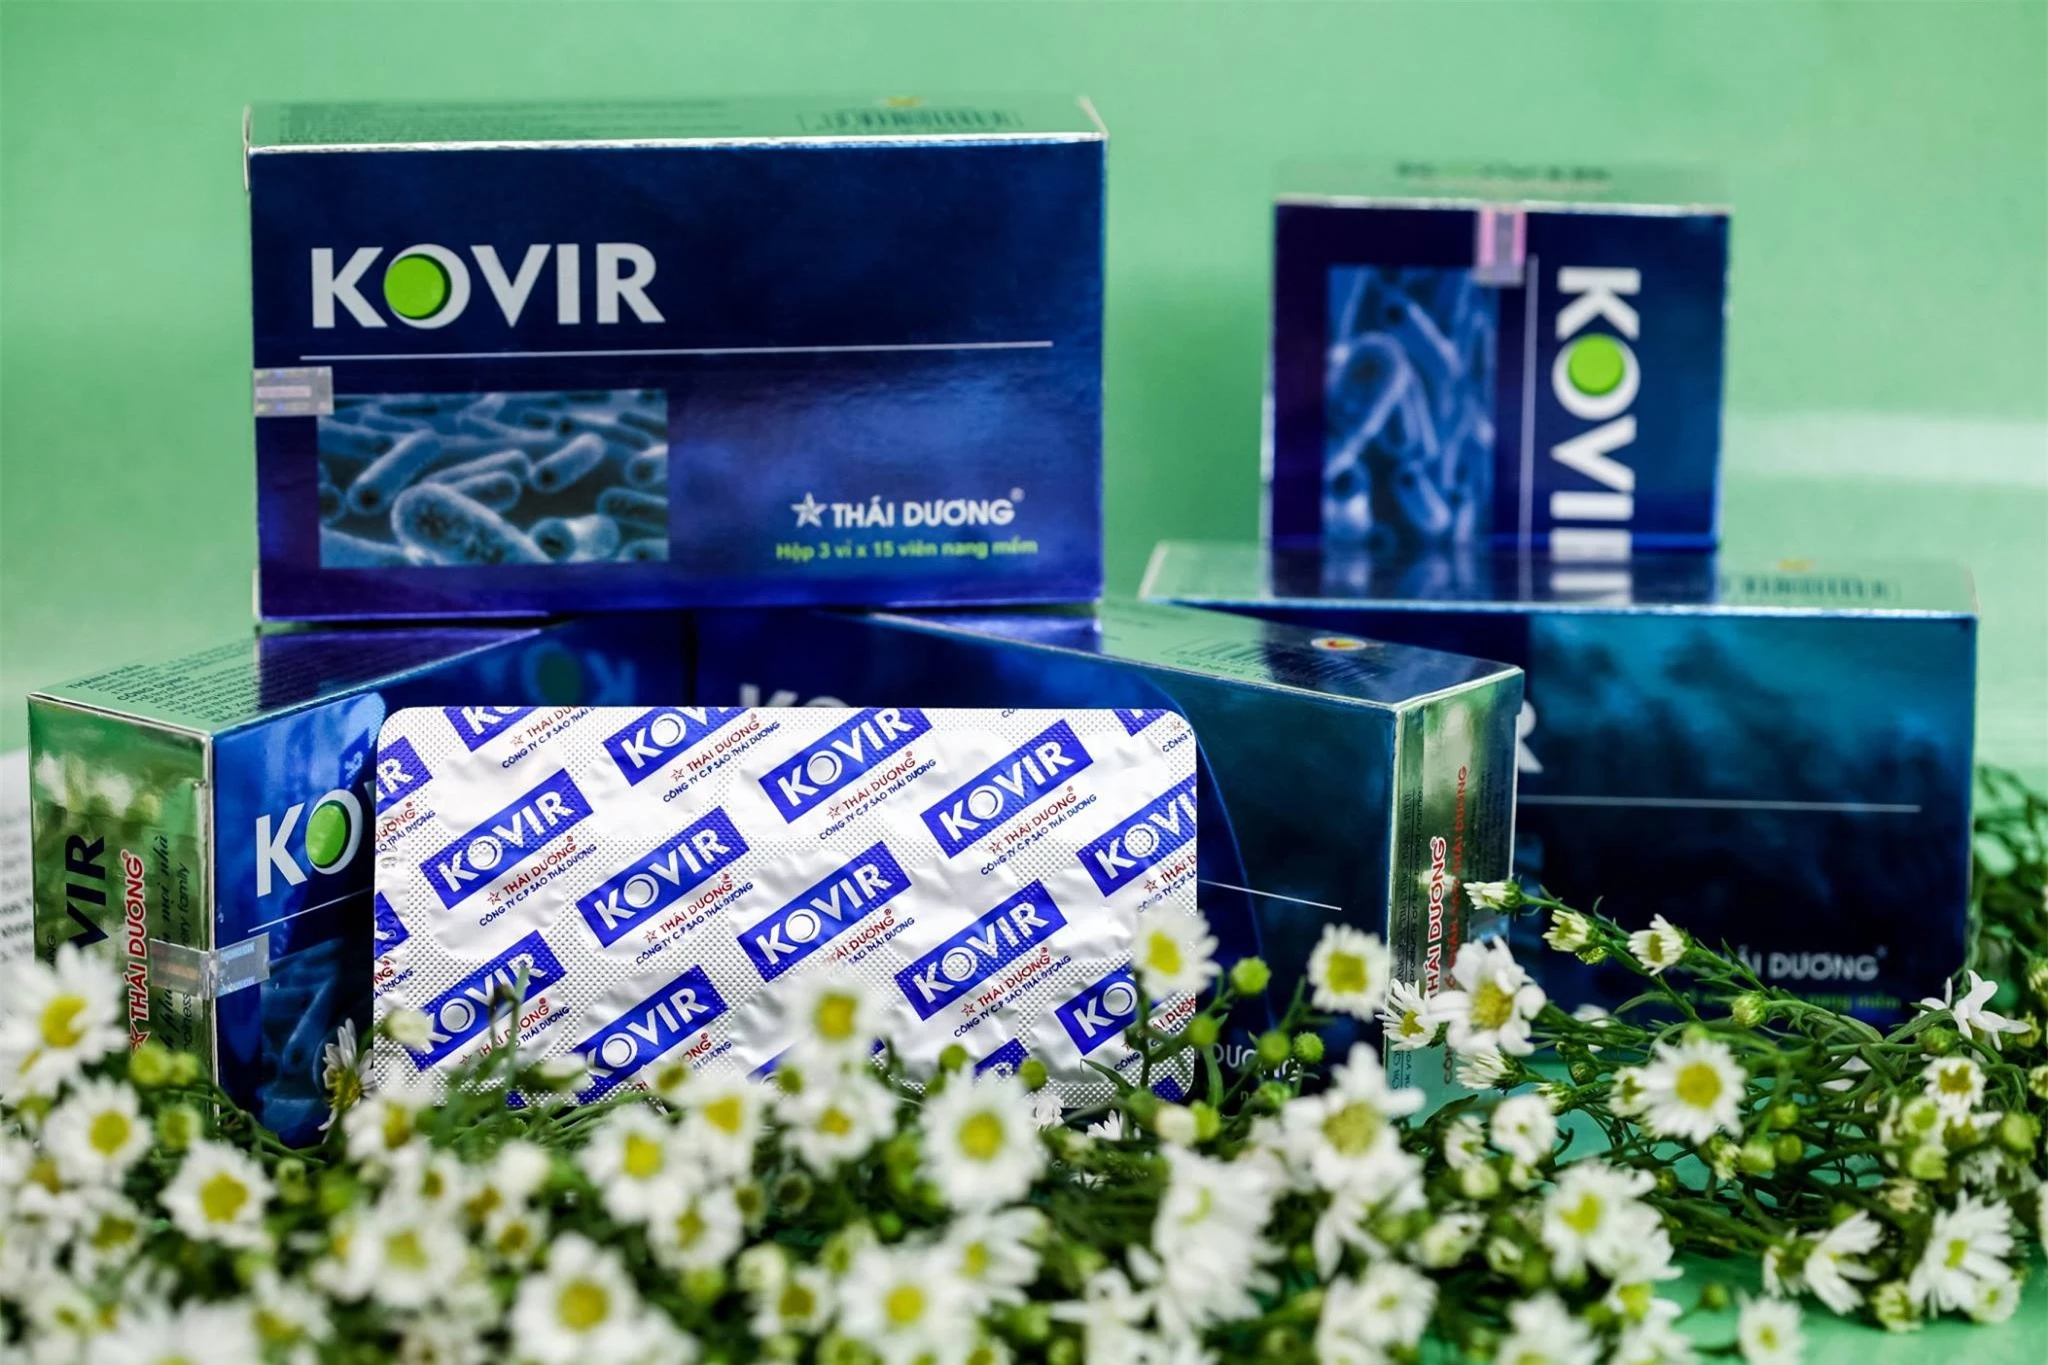 Viên uống Kovir của Sao Thái Dương được Bộ Y tế sử dụng hỗ trợ chữa COVID-19 ở nhiều tình thành.